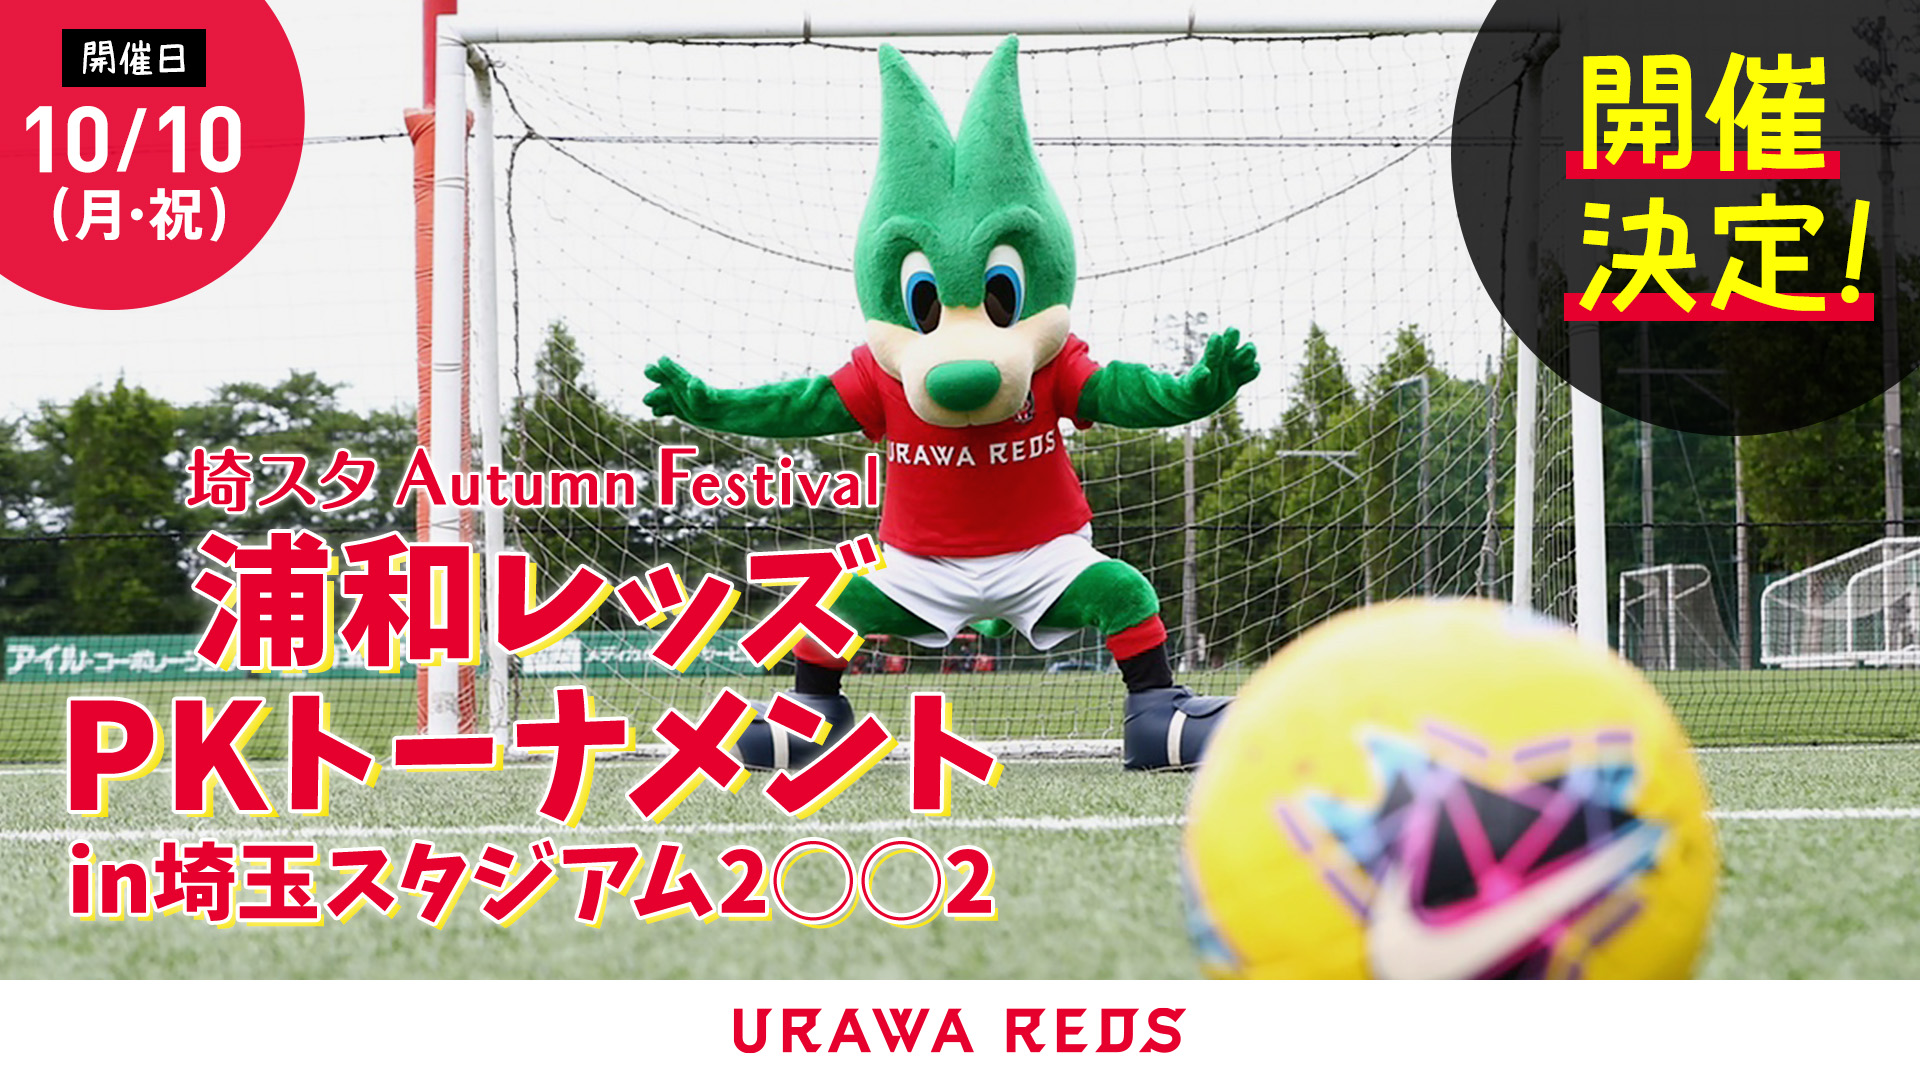 10 10 月 祝 浦和レッズpkトーナメントin埼玉スタジアム2 2開催決定 Urawa Red Diamonds Official Website